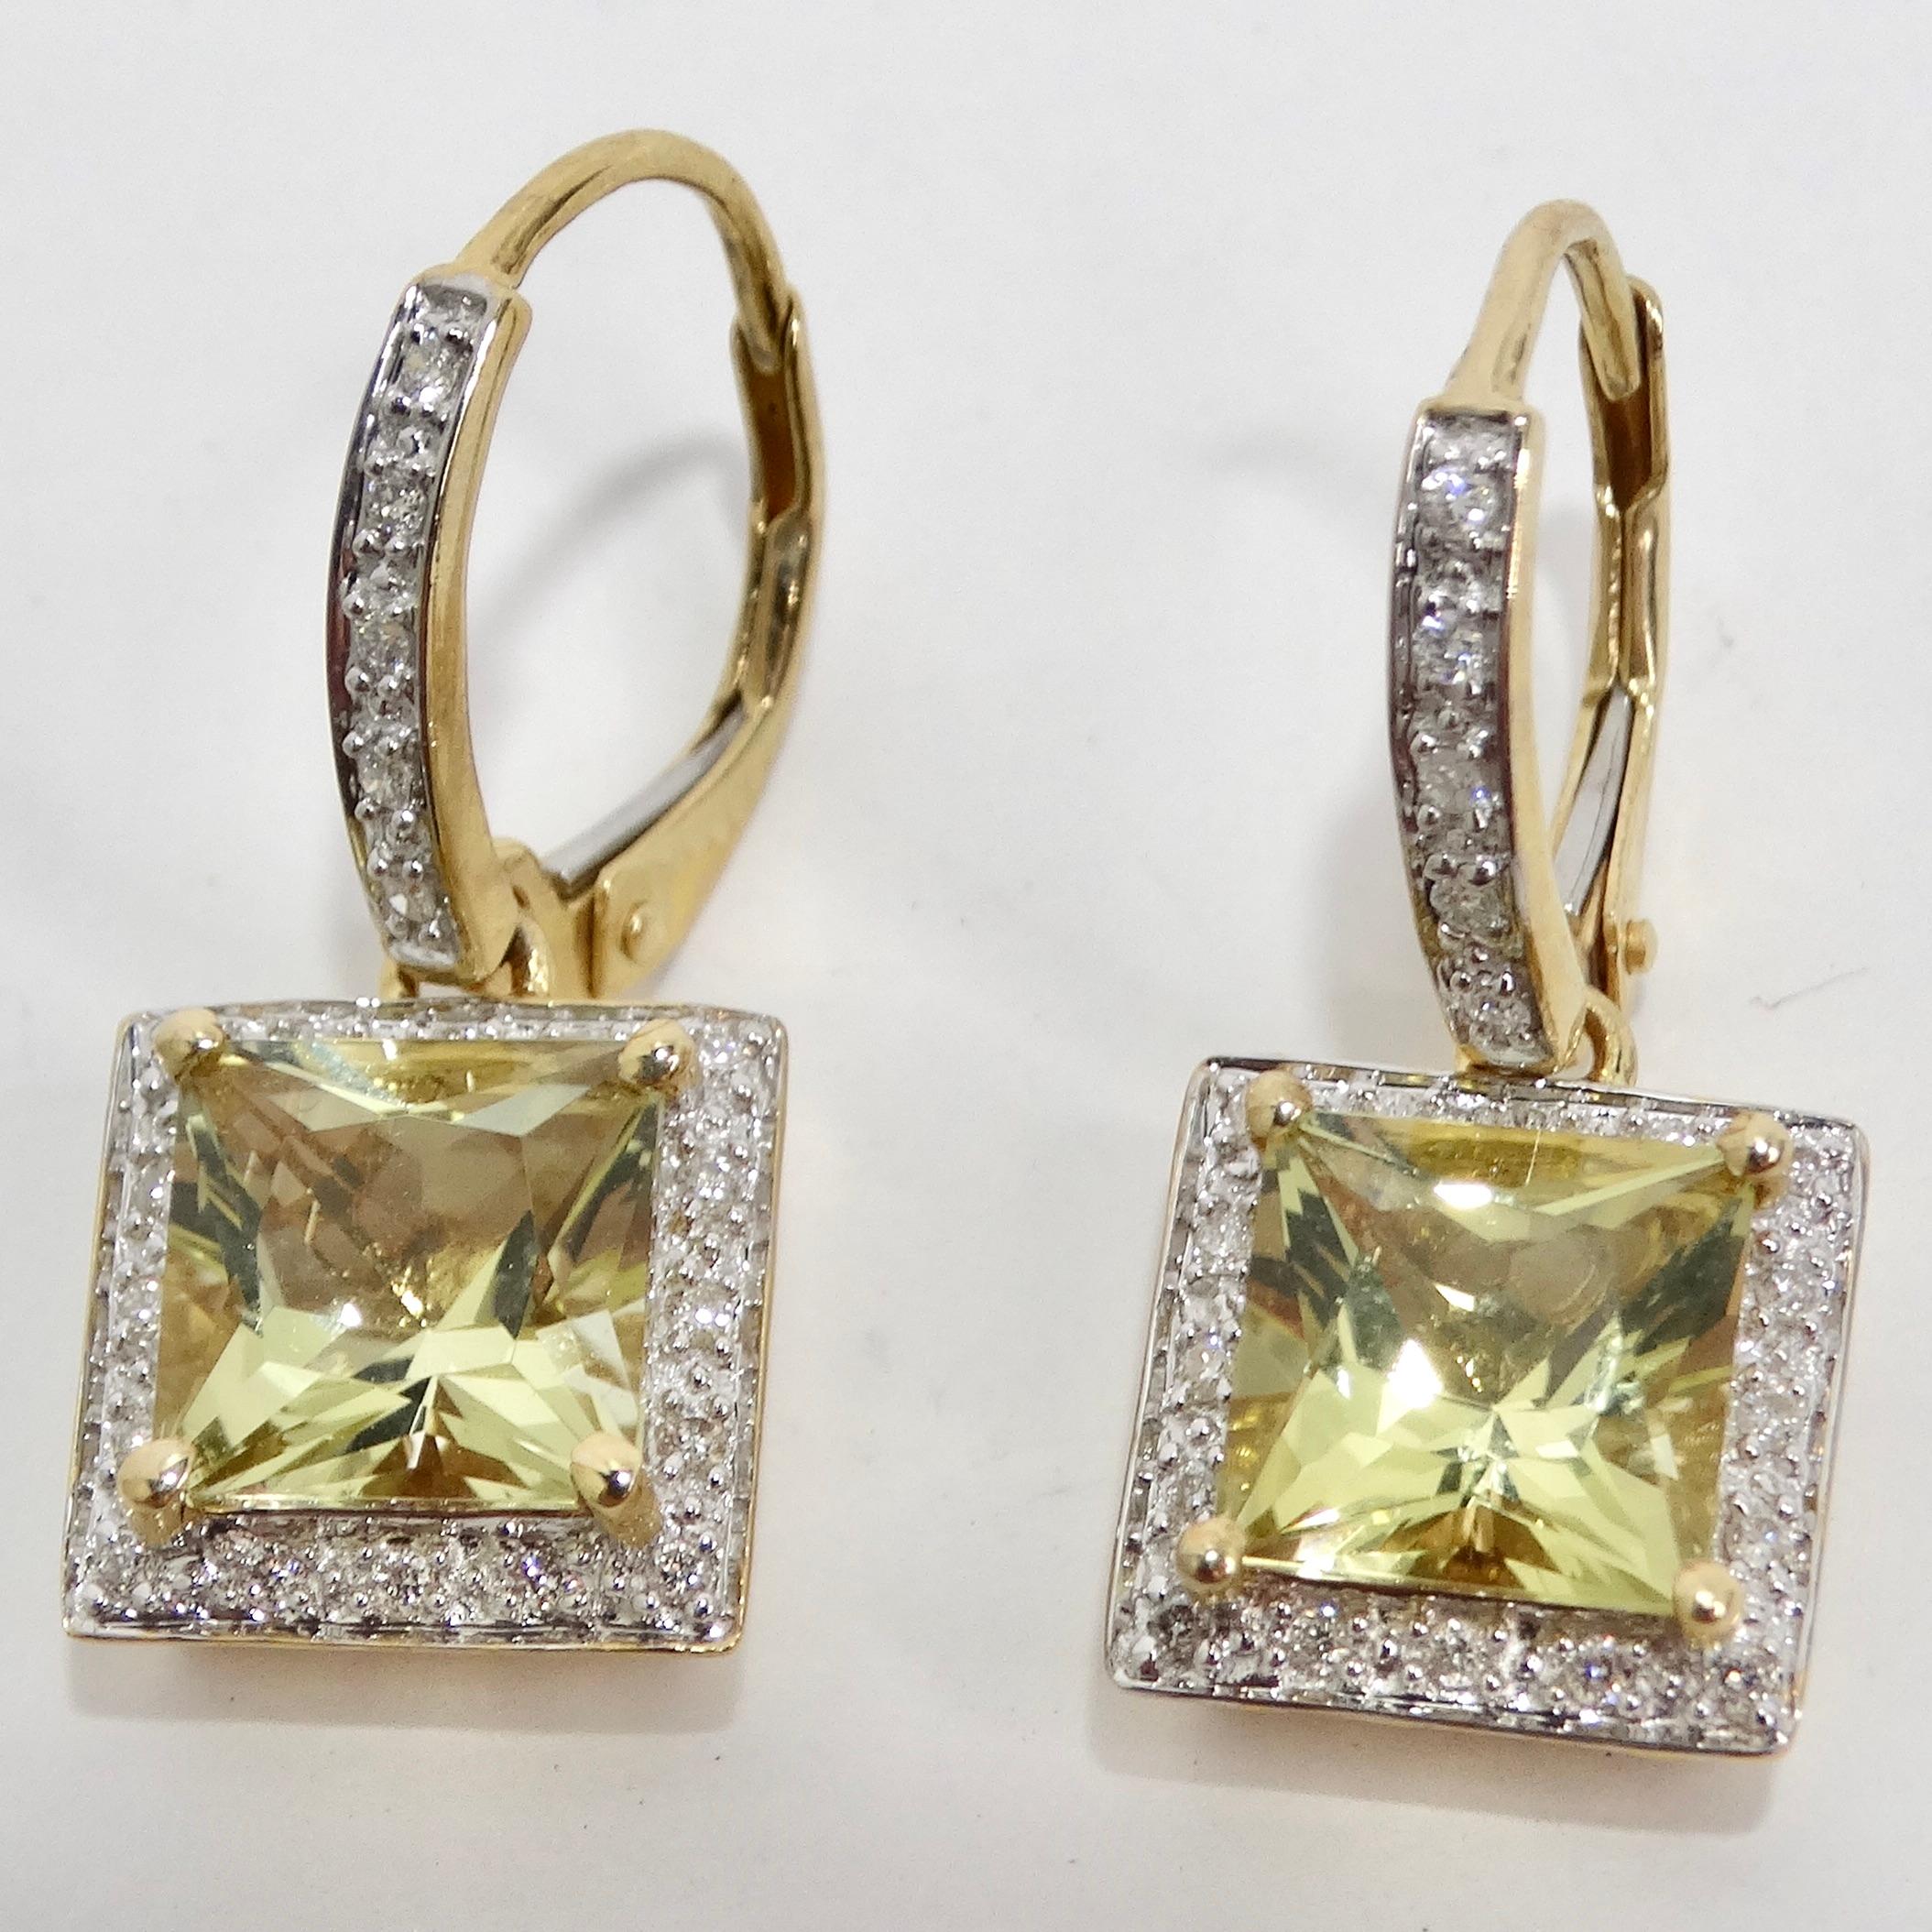 Voici les boucles d'oreilles en or 14 carats avec citrine et diamant - un classique intemporel avec une subtile touche de glamour vintage ! Ces boucles d'oreilles pendantes en or 14K sont ornées d'une pierre de citrine carrée au centre, qui respire